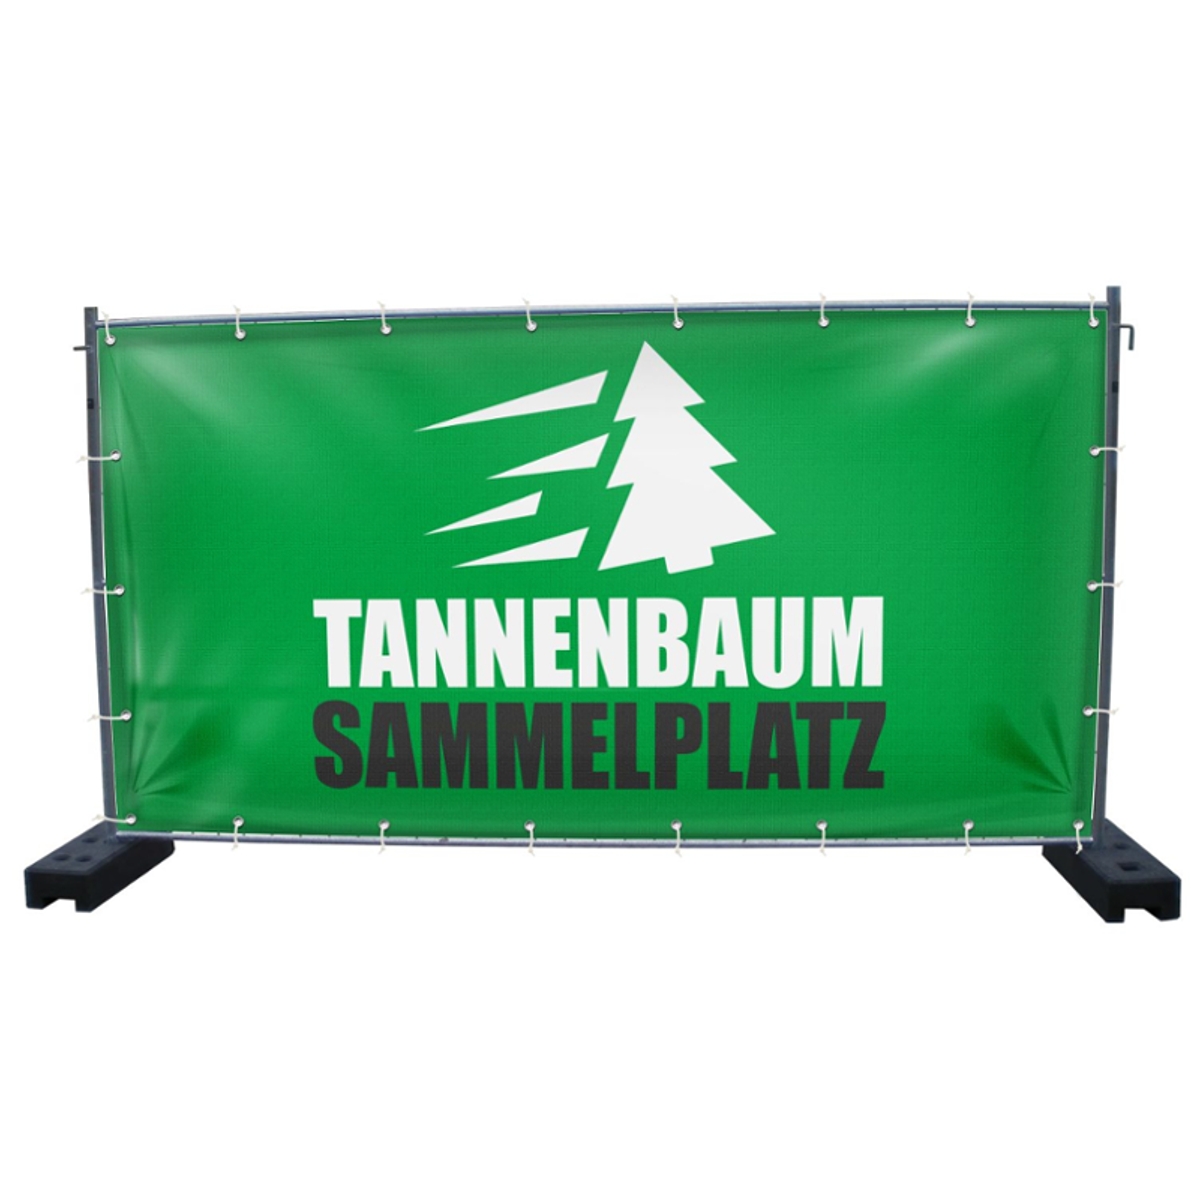 340 x 173 cm | Tannenbaum Sammelplatz Bauzaunbanner (2806)